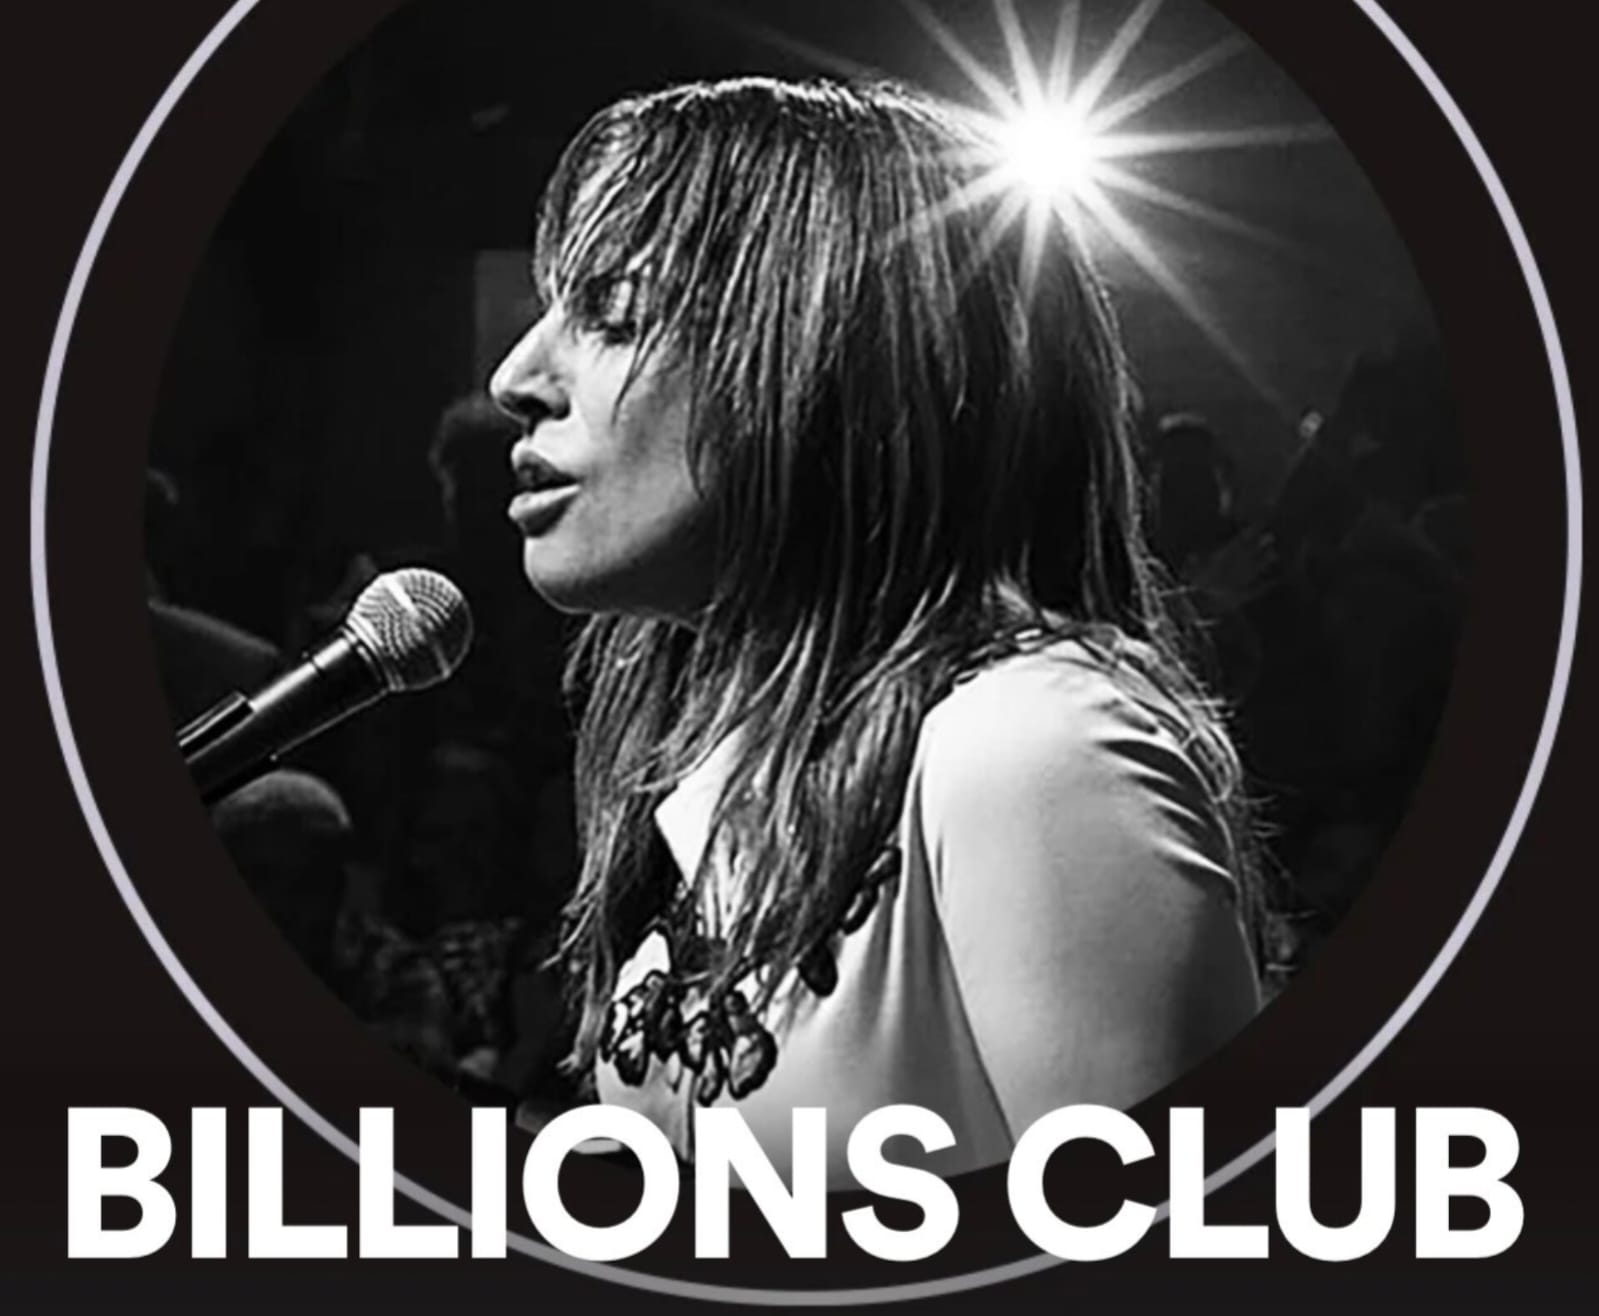 Lady Gaga na capa do 'Billions Club' do Spotify (Reprodução)